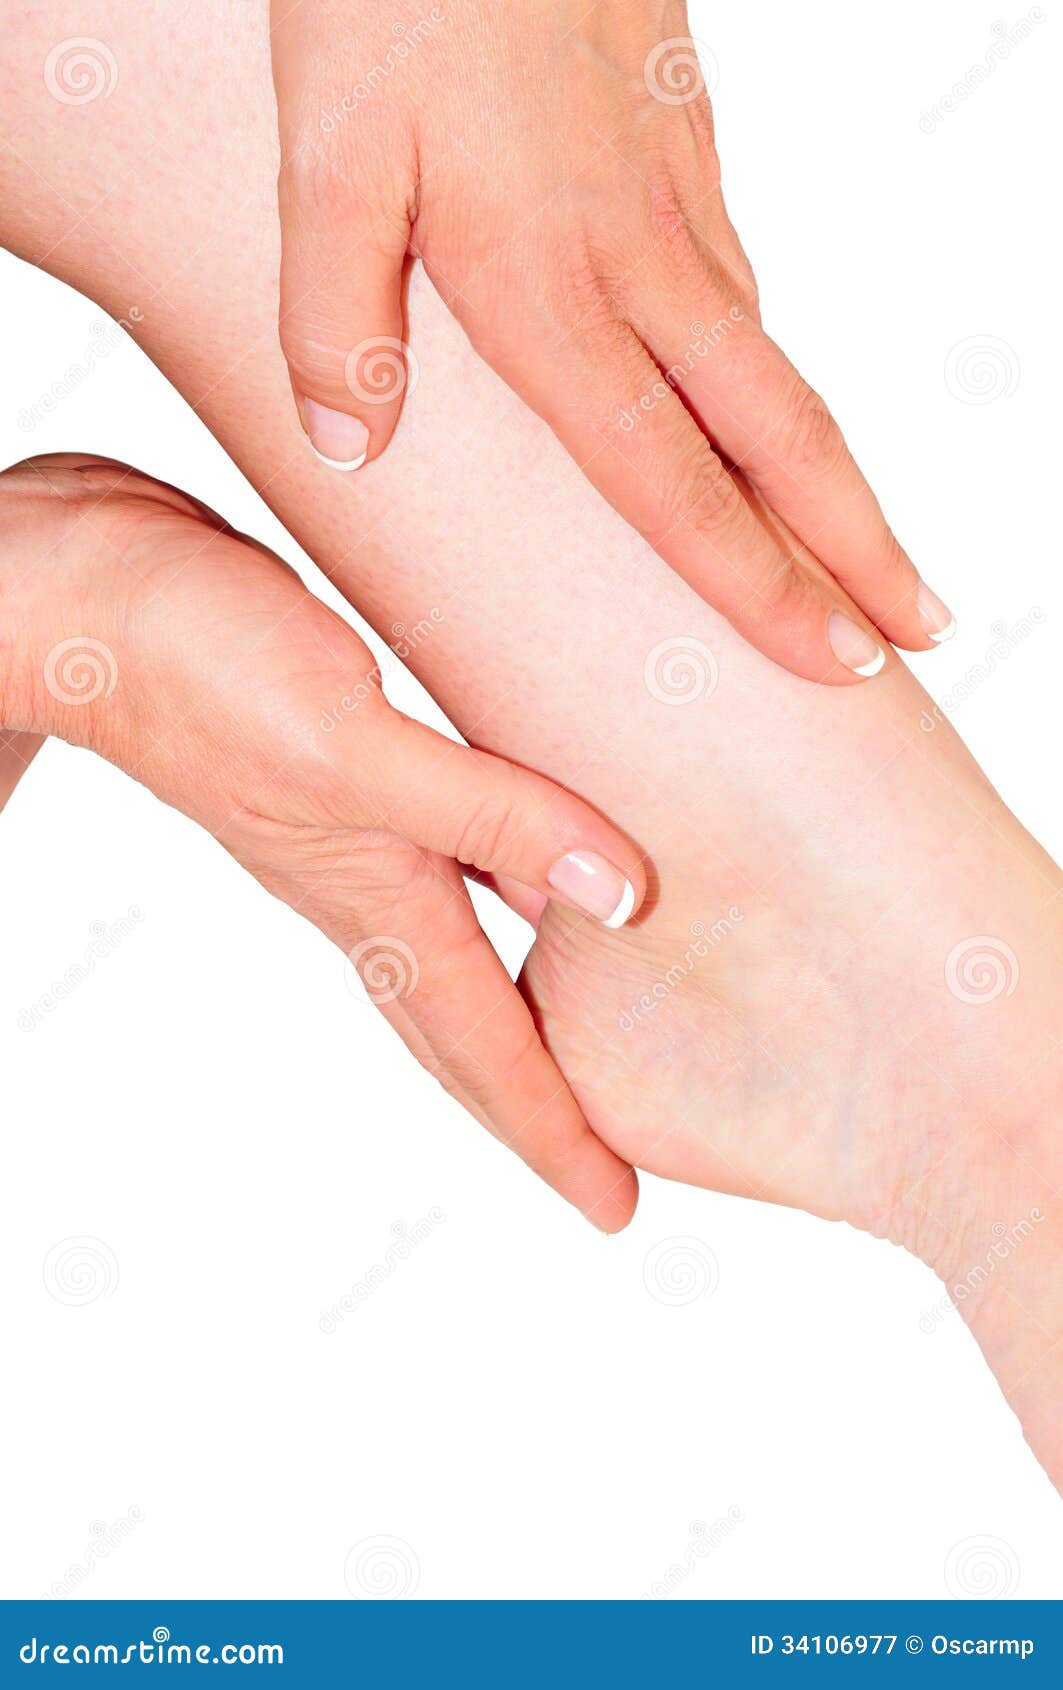 woman's hands